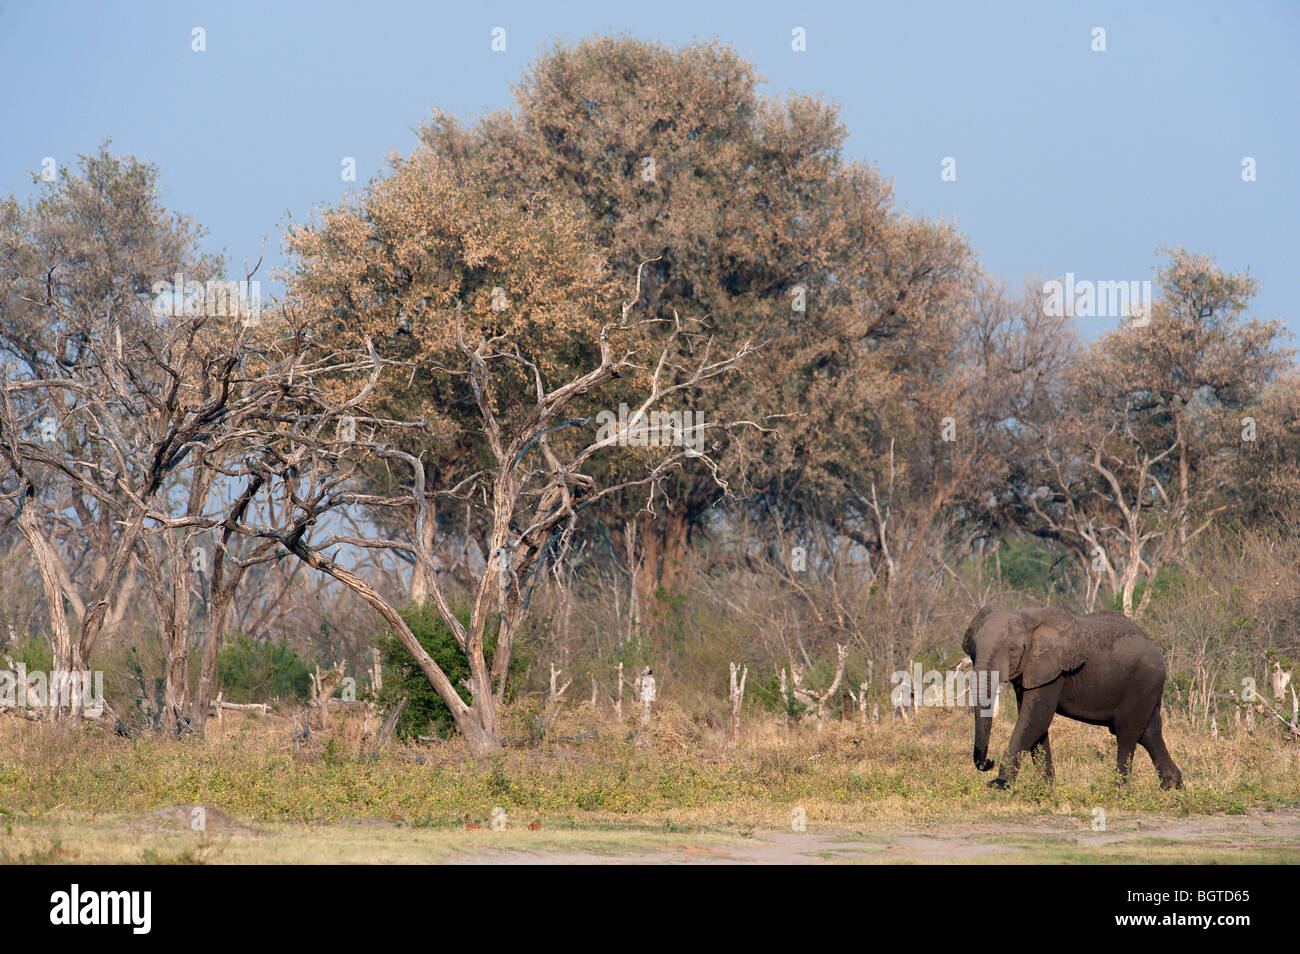 Elephants grazing on the banks of the Kwai River, Kwai, Botswana Stock Photo